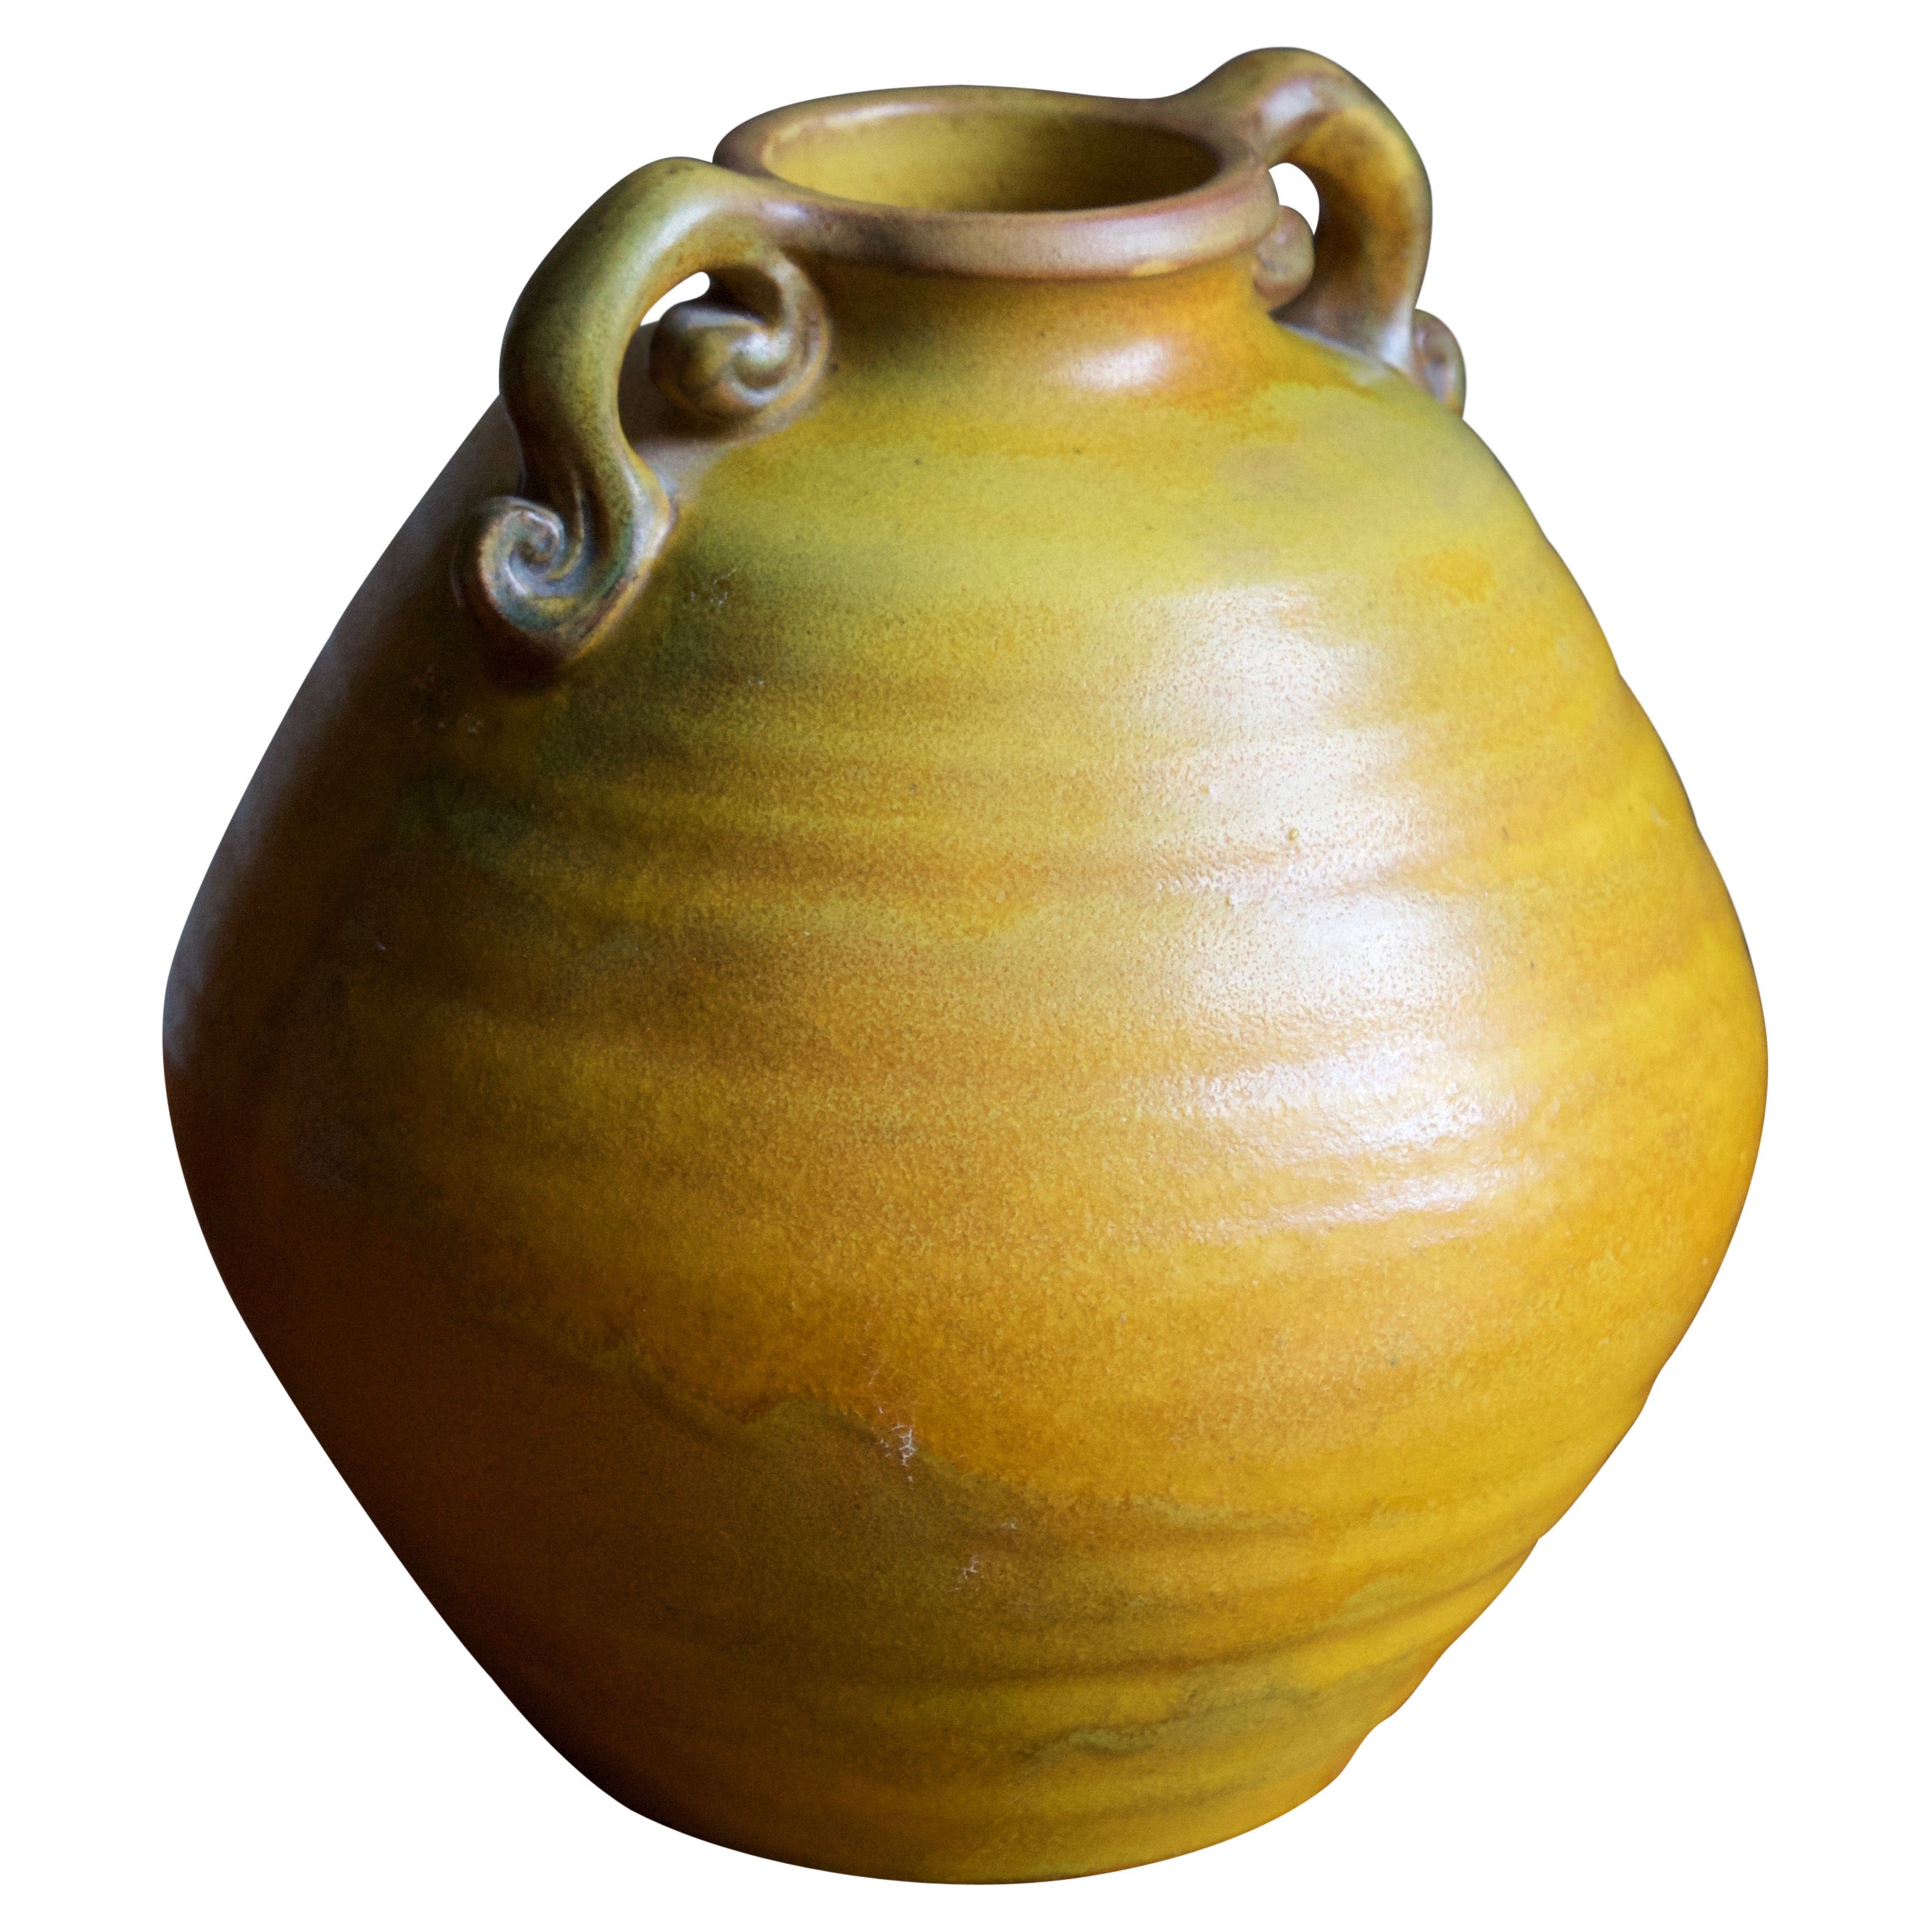 Peter Ipsen Enke, Vase, Glazed Stoneware, Denmark, C 1945